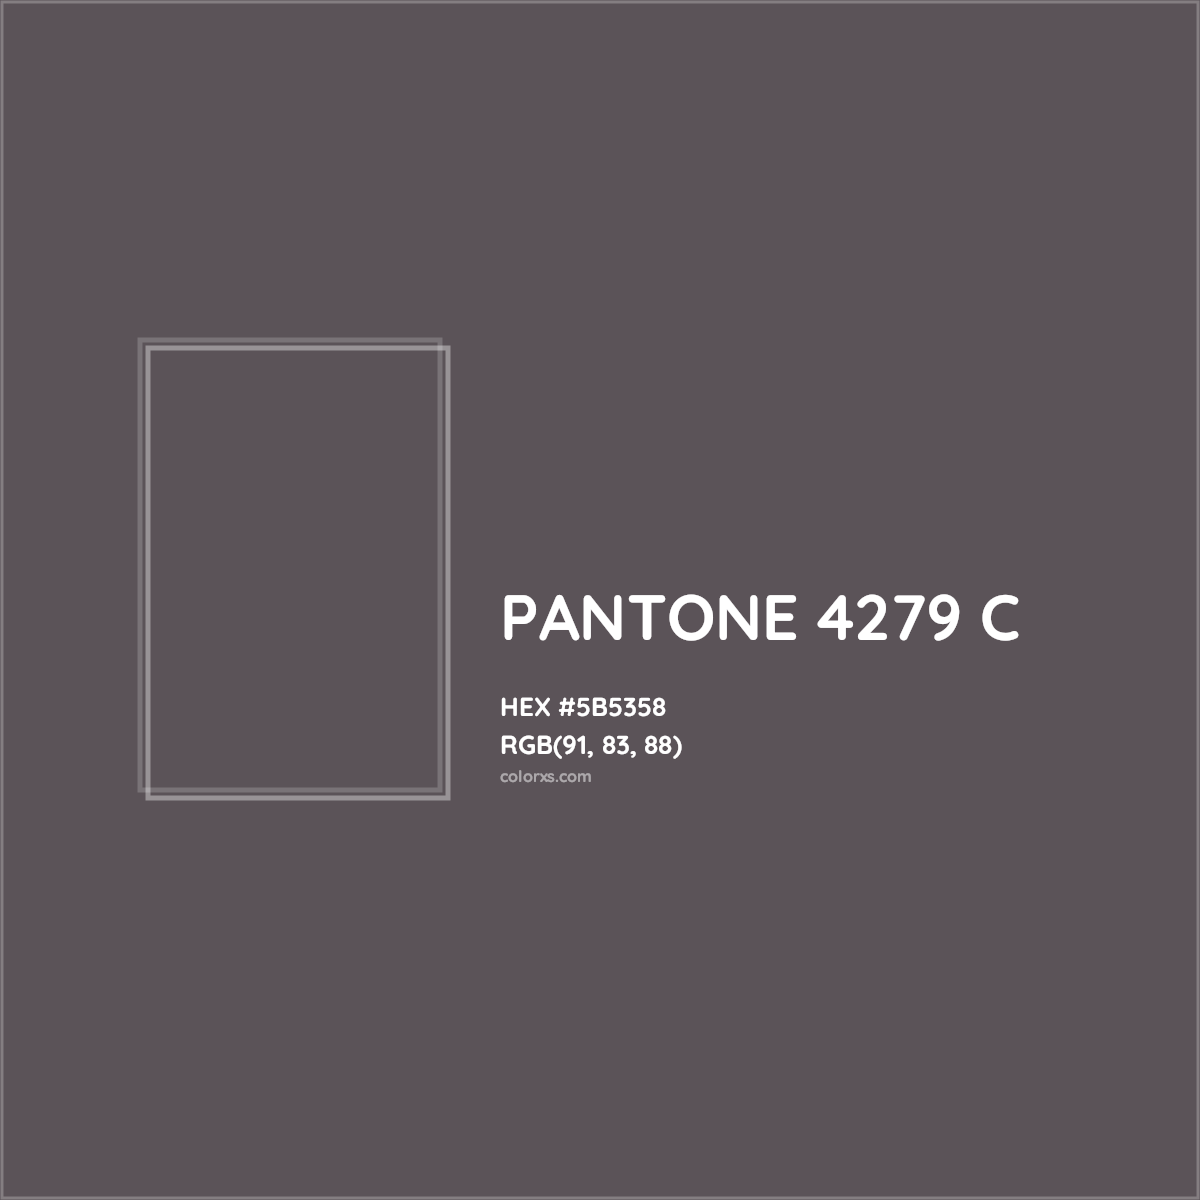 HEX #5B5358 PANTONE 4279 C CMS Pantone PMS - Color Code